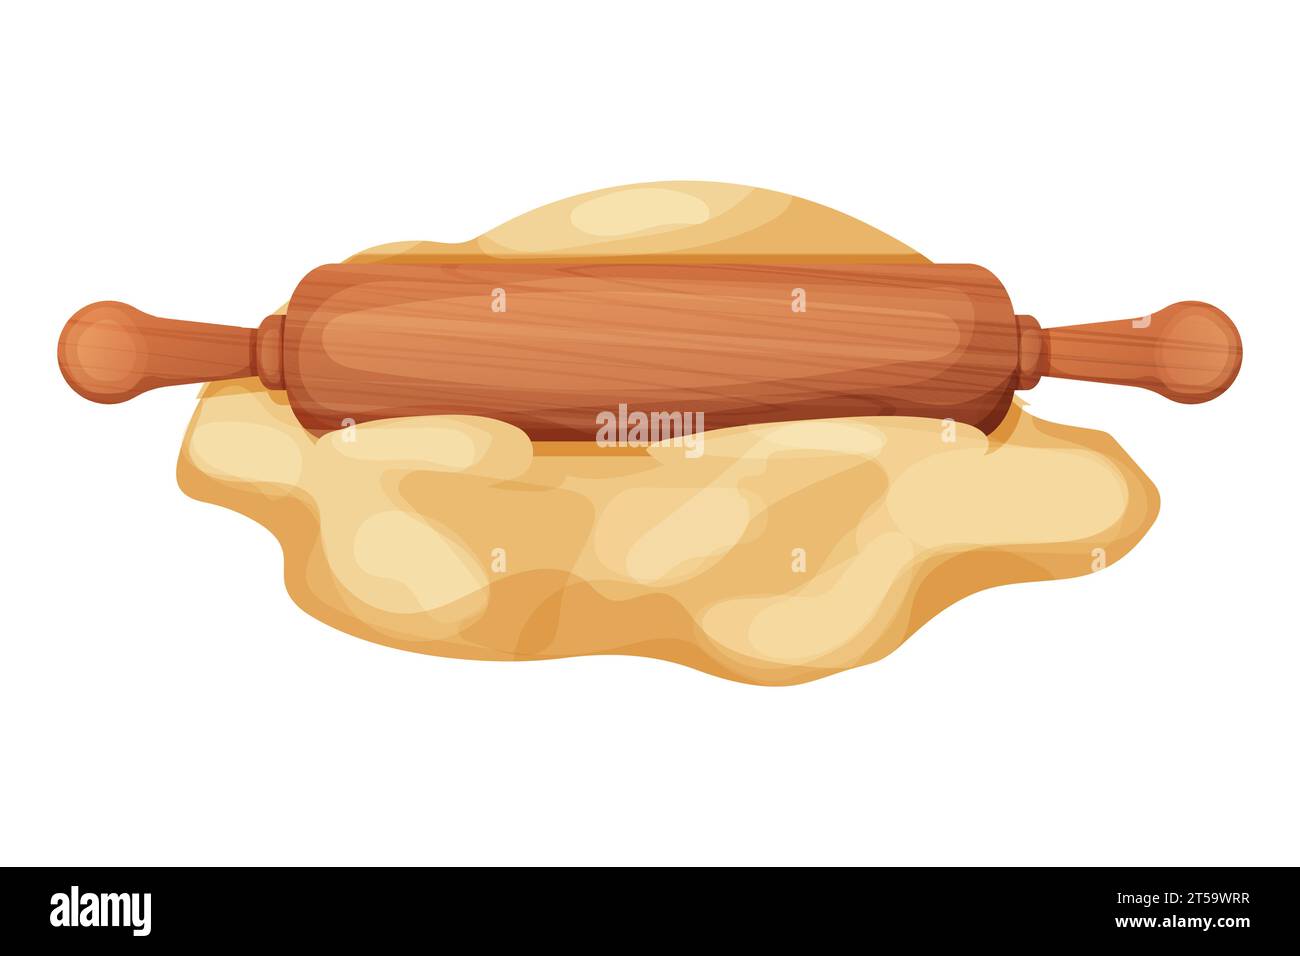 Rouleau à pâtisserie en bois avec de la pâte et de la farine manipulent l'équipement culinaire dans le style de bande dessinée isolé sur fond blanc. Rouleau texturé en bois, ustensile, recette de boulanger. Illustration vectorielle Illustration de Vecteur